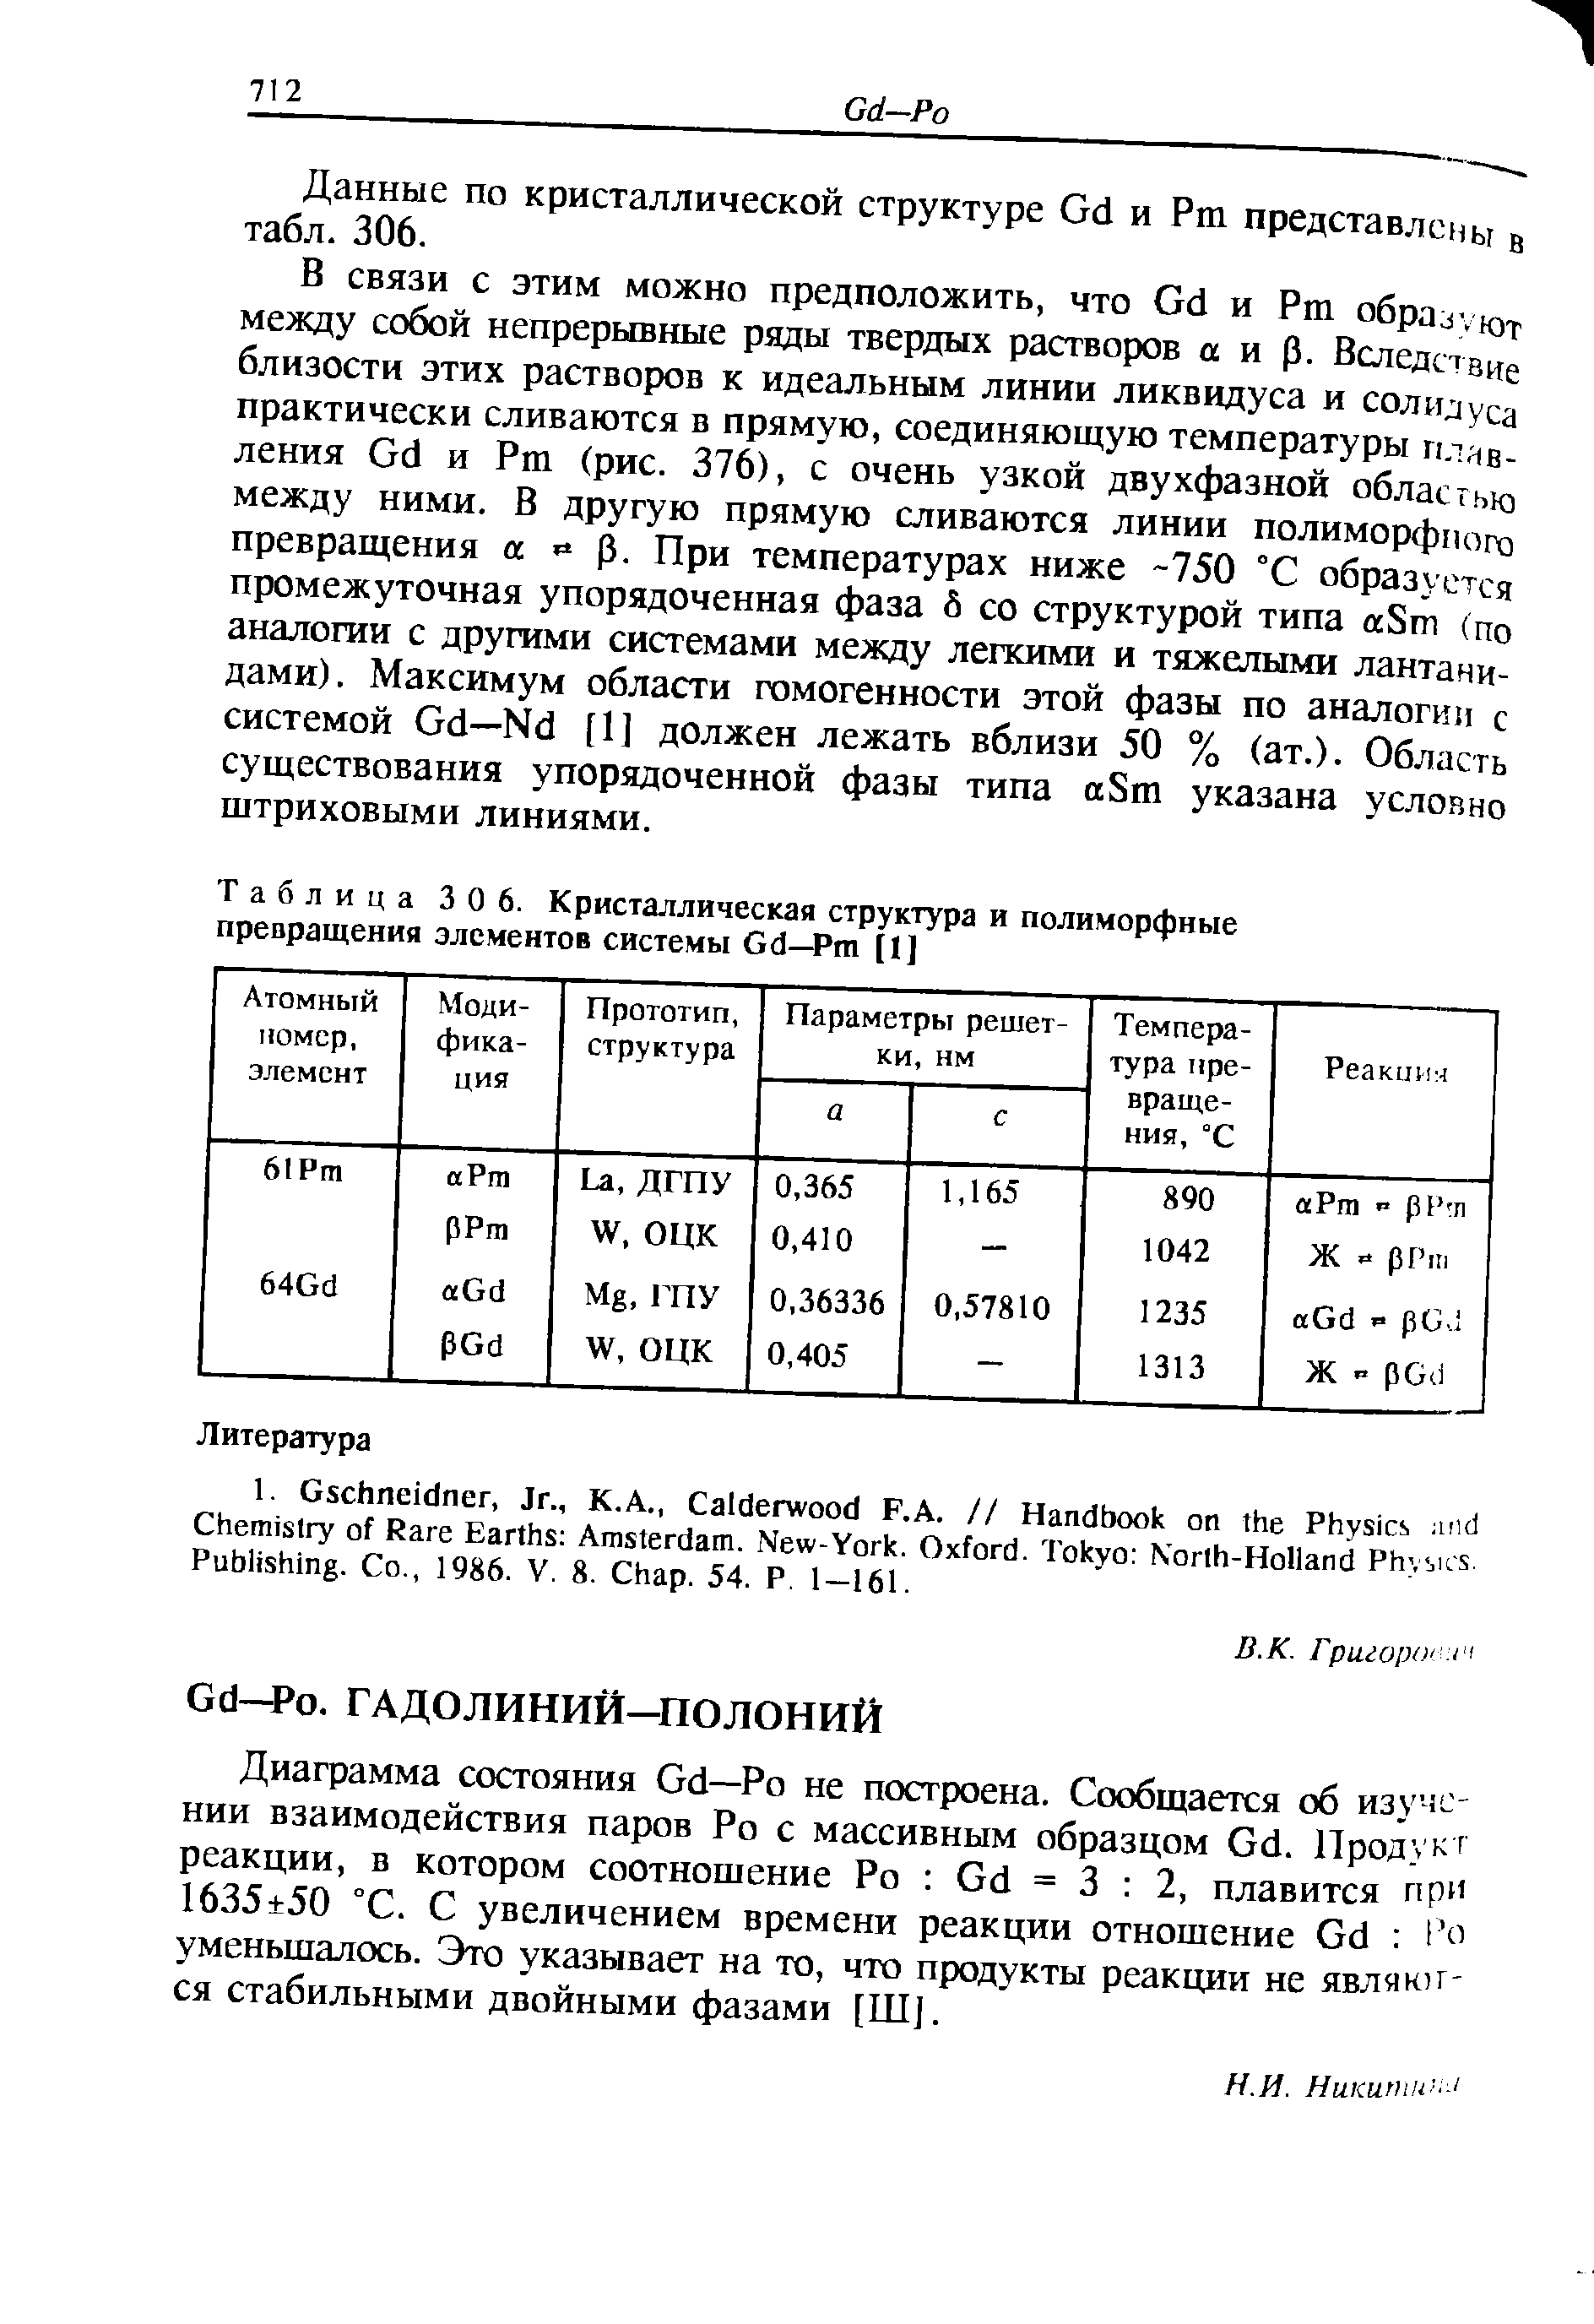 Таблица 30 6. Кристаллическая структура и полиморфные прсБращения элементов системы Gd—Pm [1]
